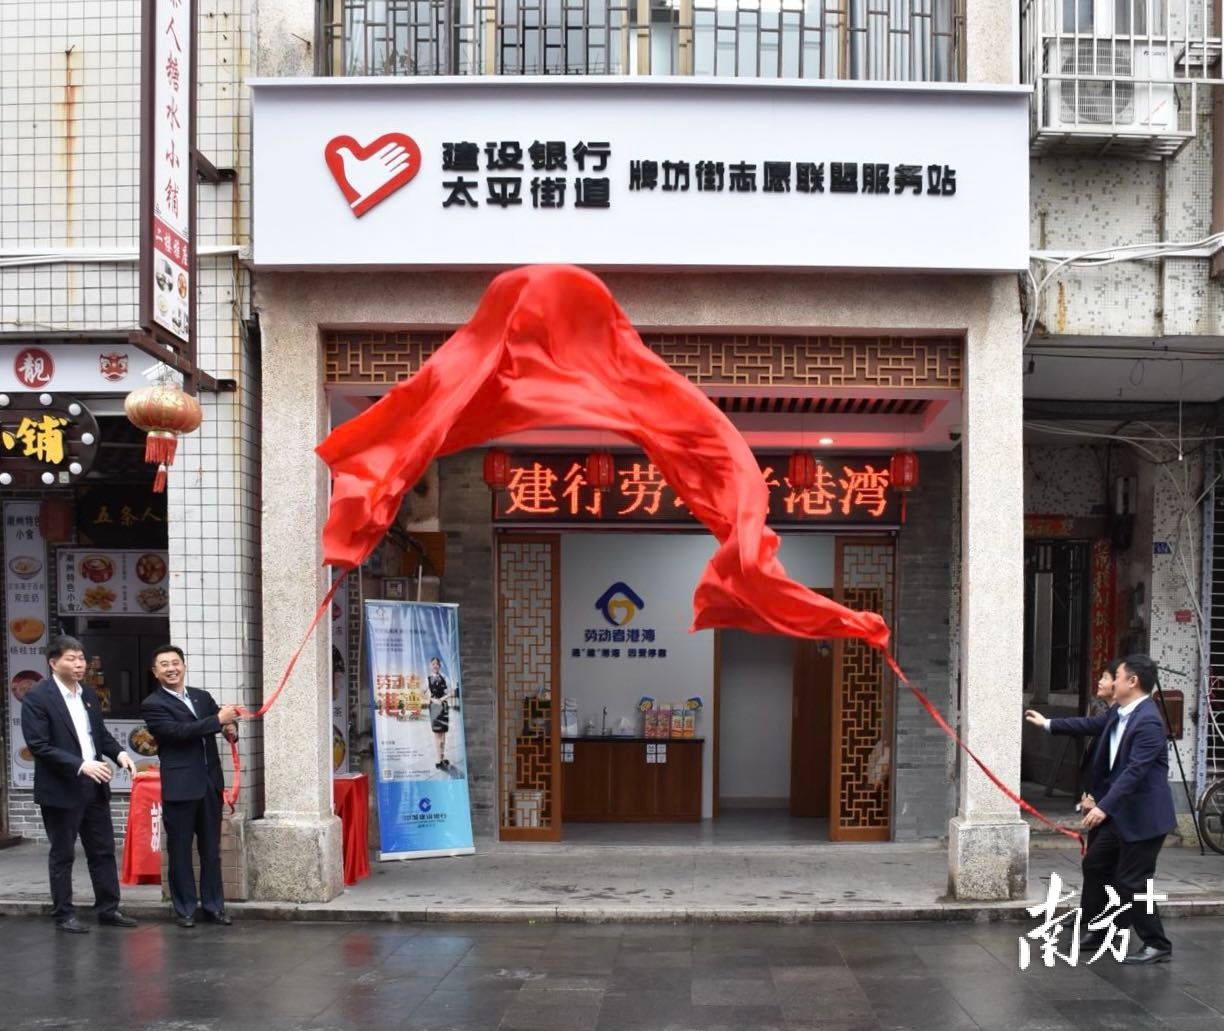 2月10日，建设银行、太平街道“牌坊街志愿联盟服务站”在牌坊街揭牌成立。